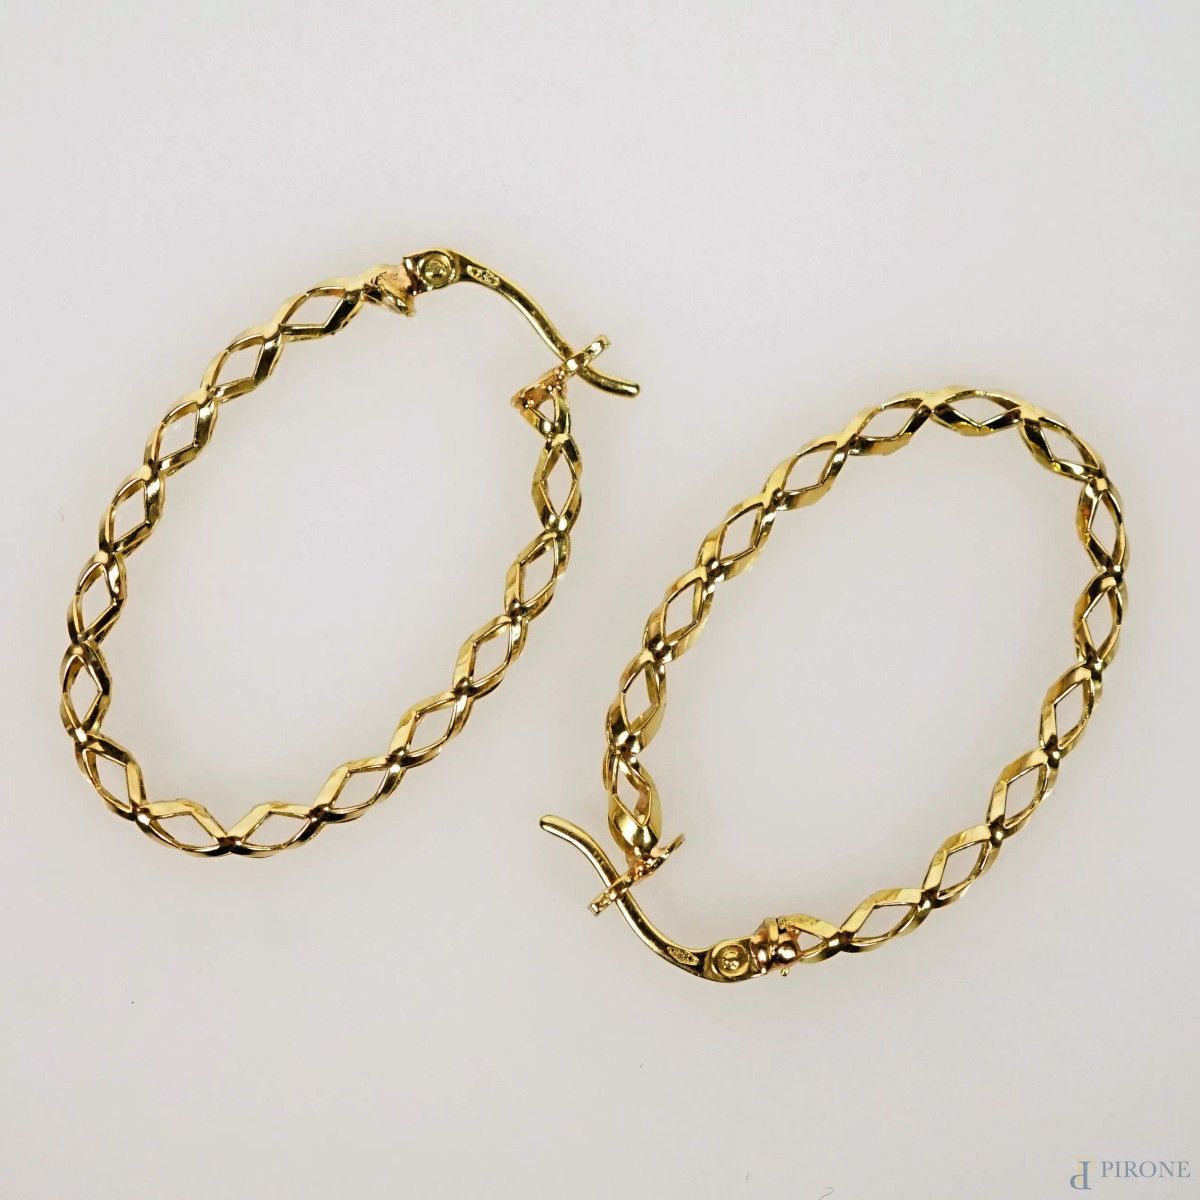 Null Paar Ohrringe aus 18 kt Gelbgold, Länge 3,3 cm, Gewicht 2,8 g.